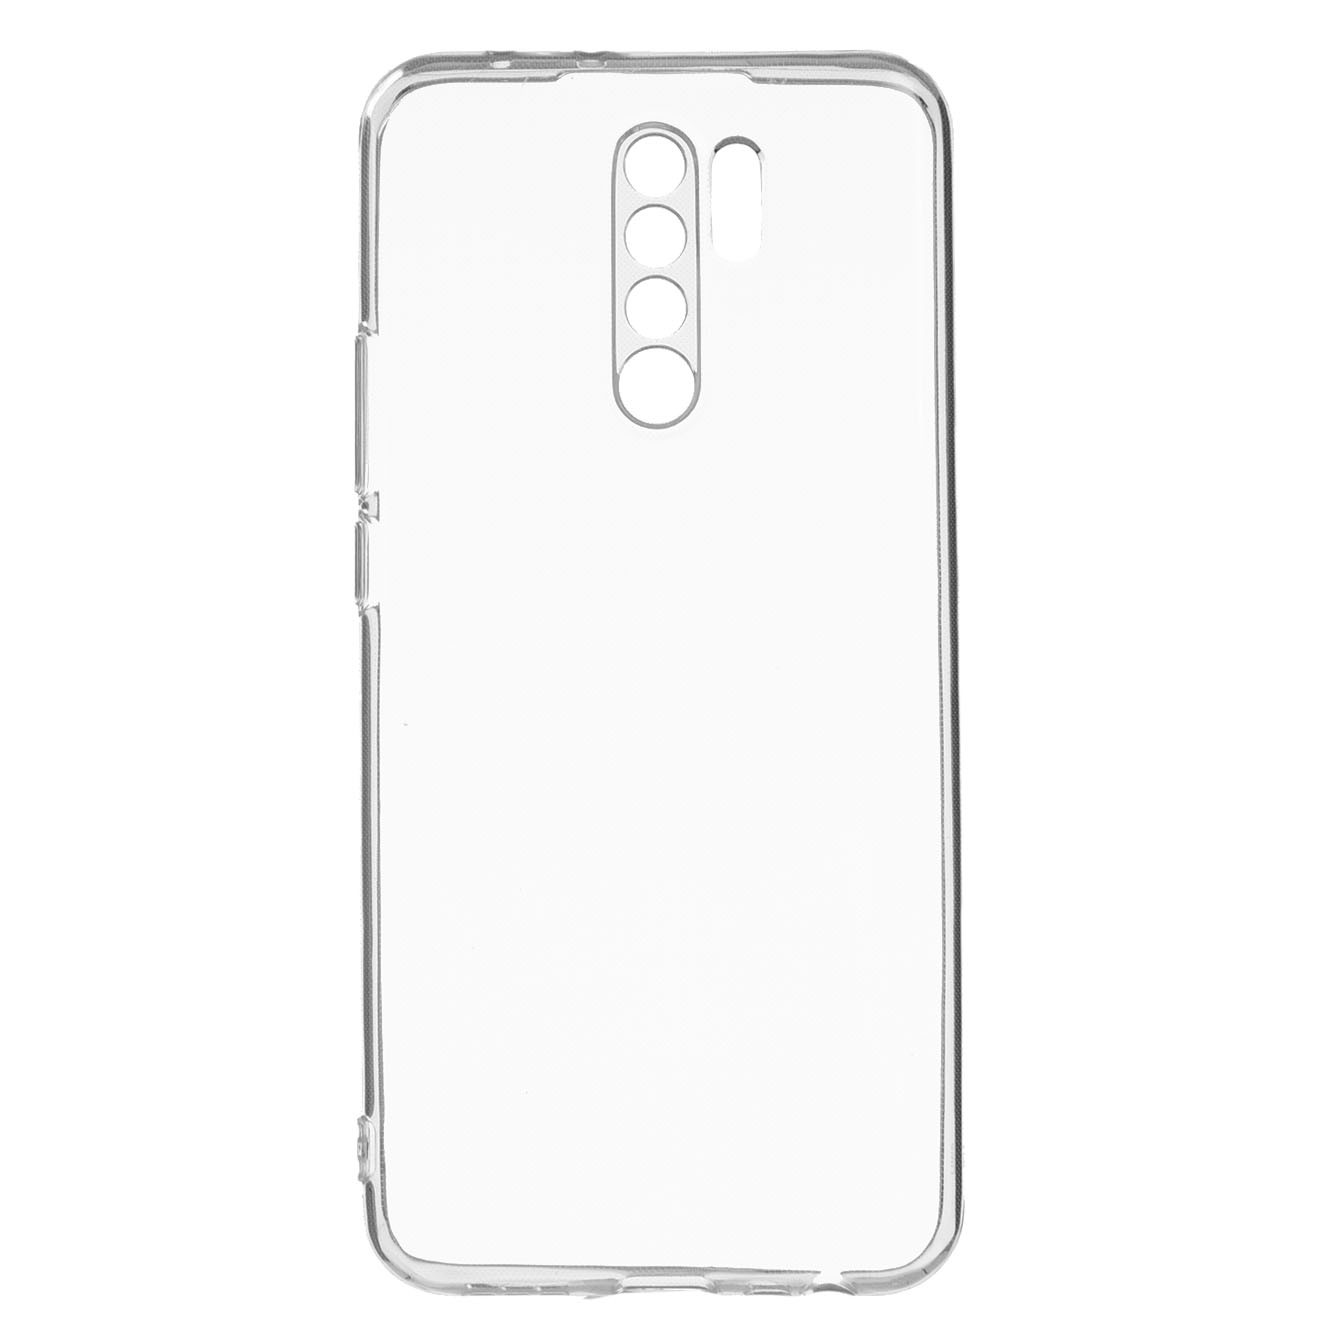 Funda para Redmi Note 9/Redmi 10X 4G M2003J15SC con protector de pantalla  de vidrio templado, cuerpo completo transparente con diseño floral, fundas